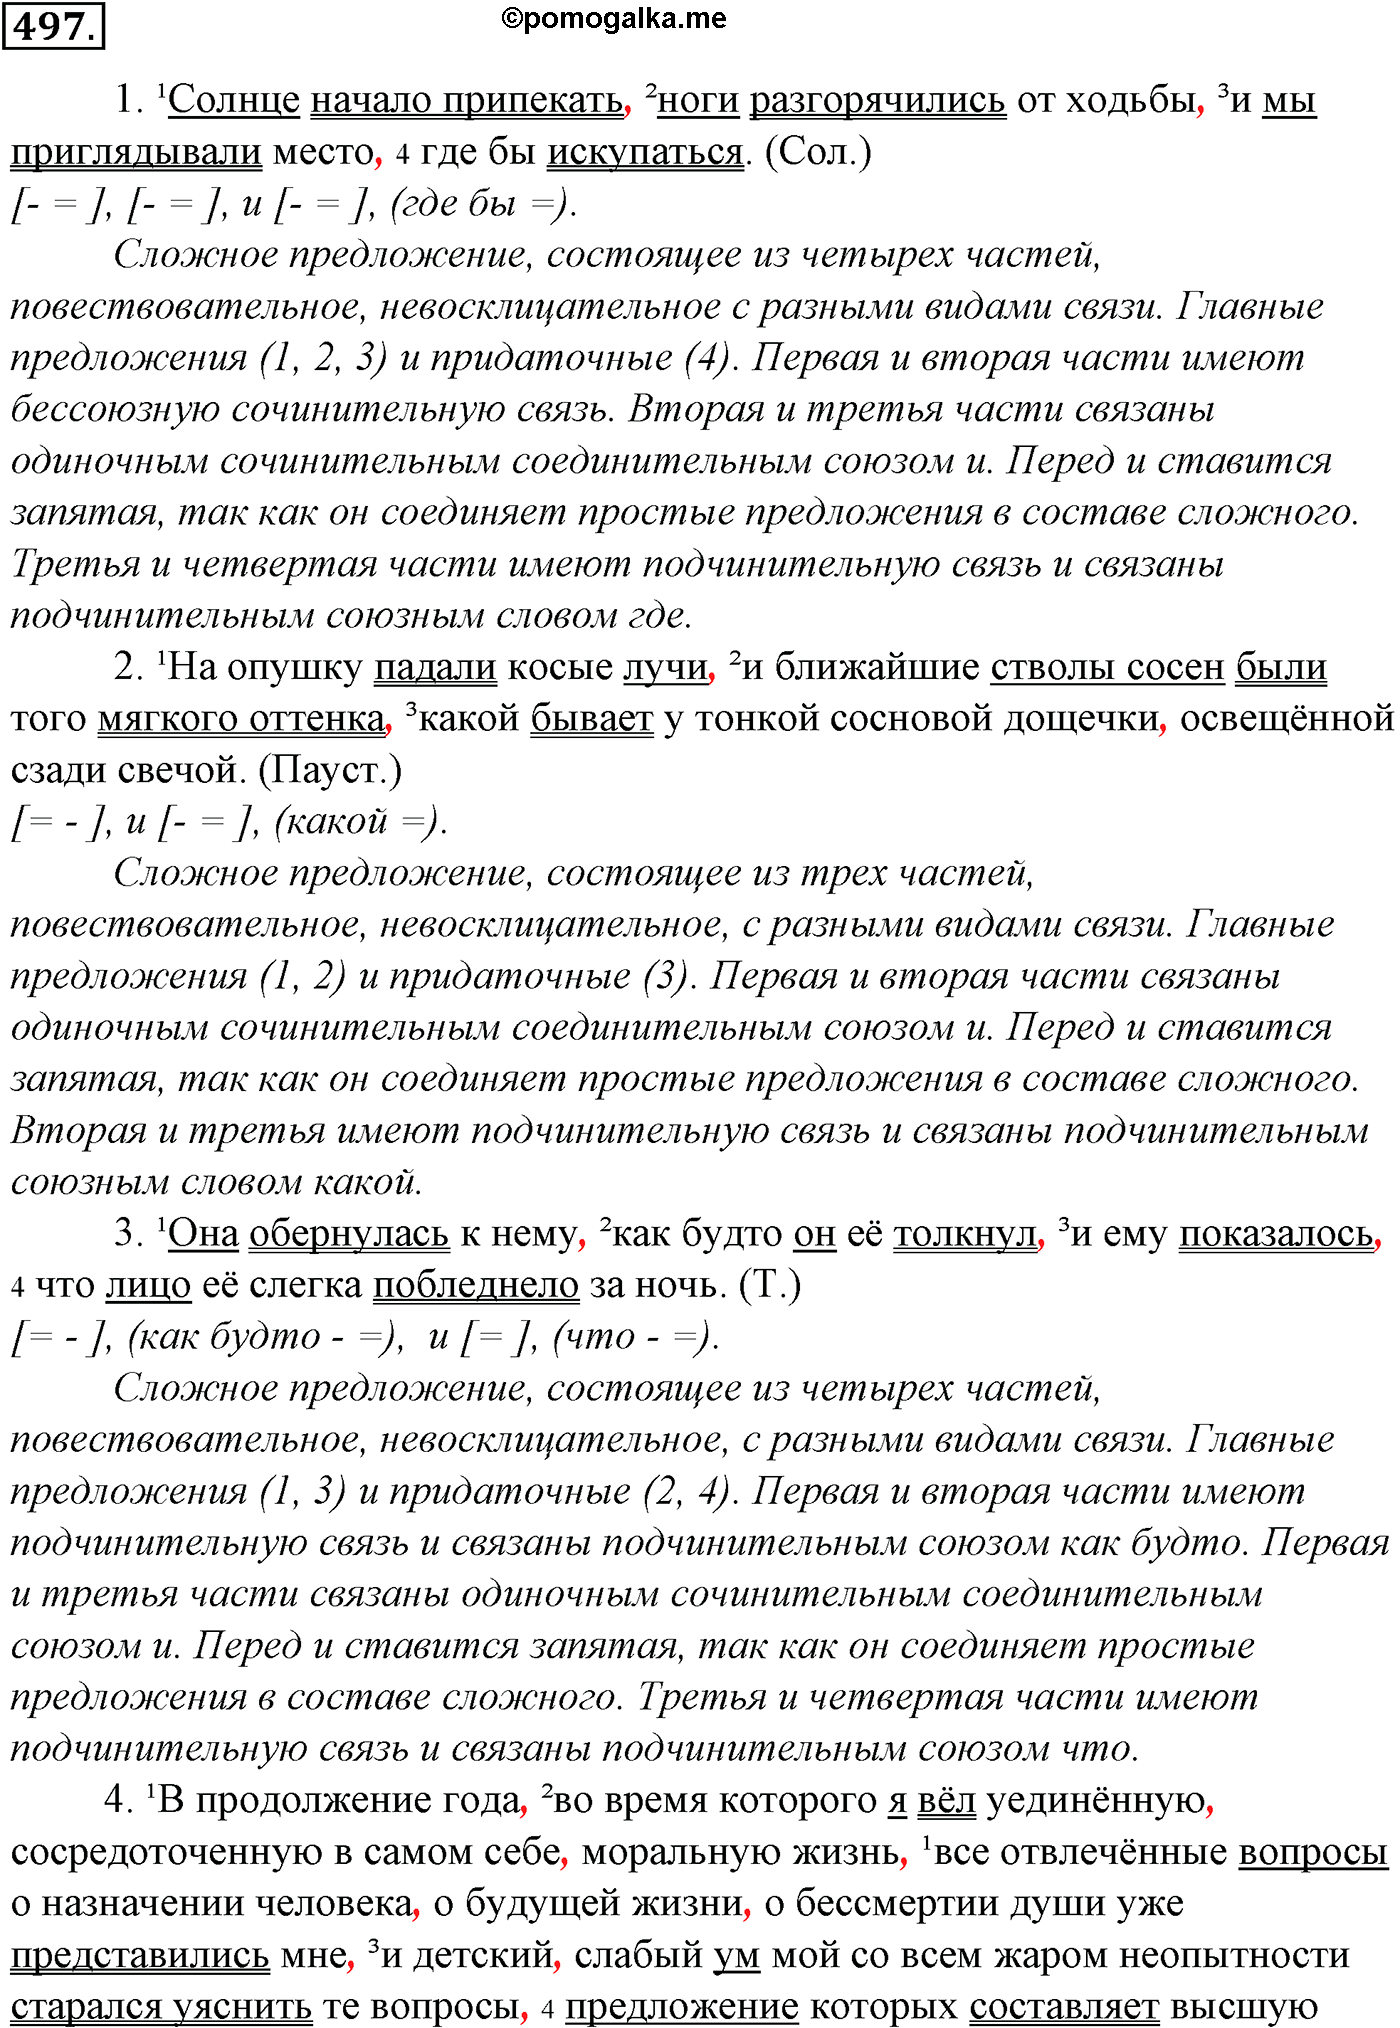 упражнение №497 русский язык 10-11 класс Гольцова